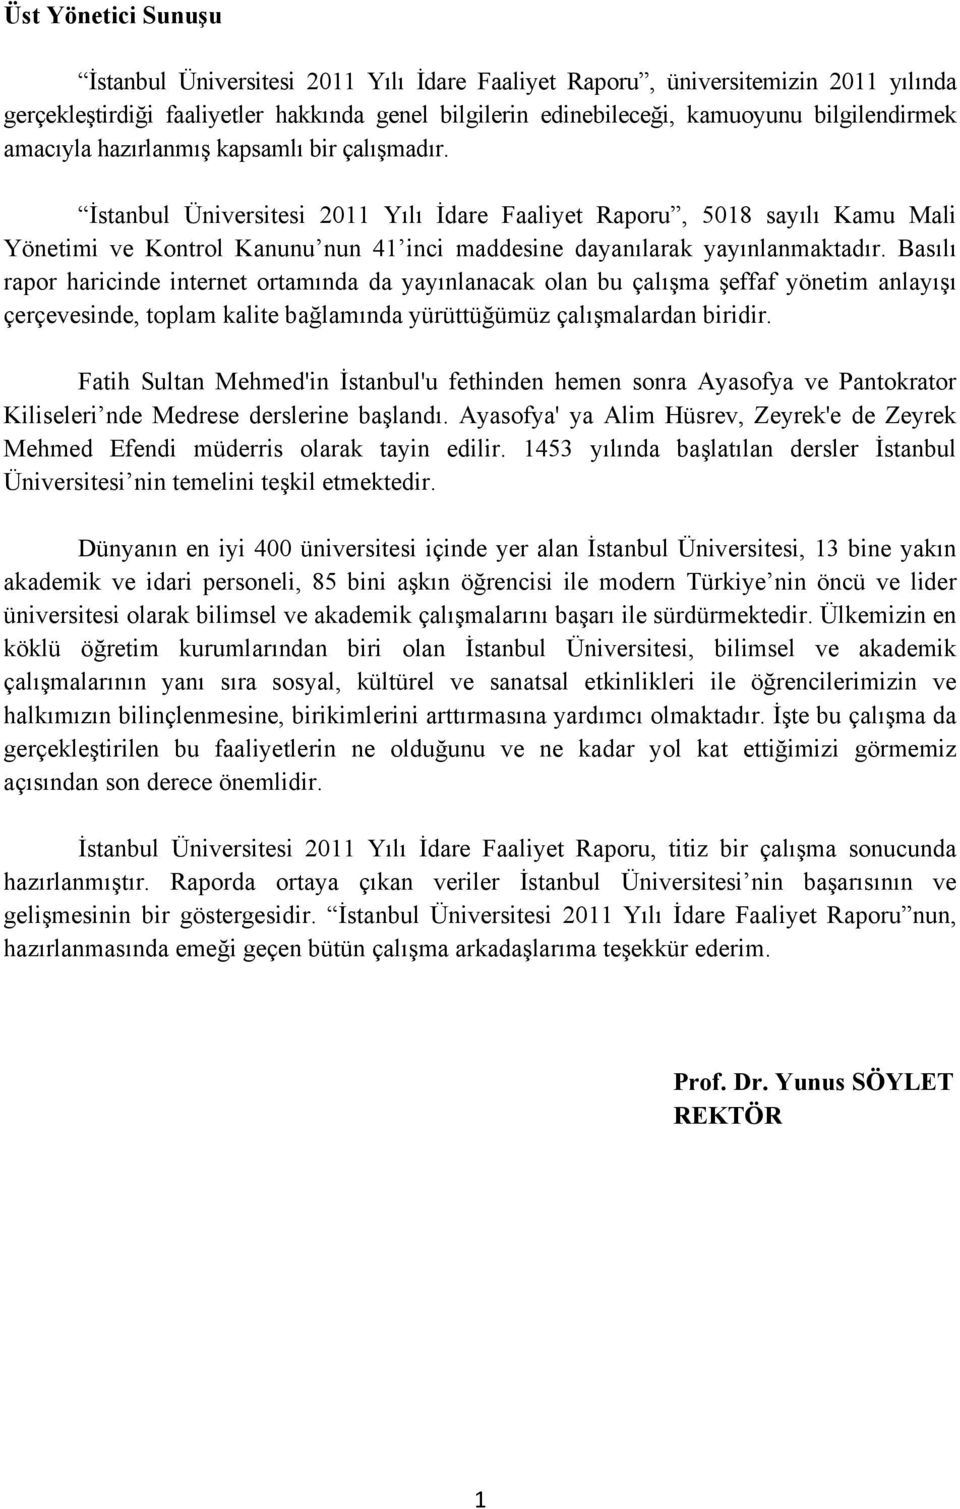 İstanbul Üniversitesi 2011 Yılı İdare Faaliyet Raporu, 5018 sayılı Kamu Mali Yönetimi ve Kontrol Kanunu nun 41 inci maddesine dayanılarak yayınlanmaktadır.